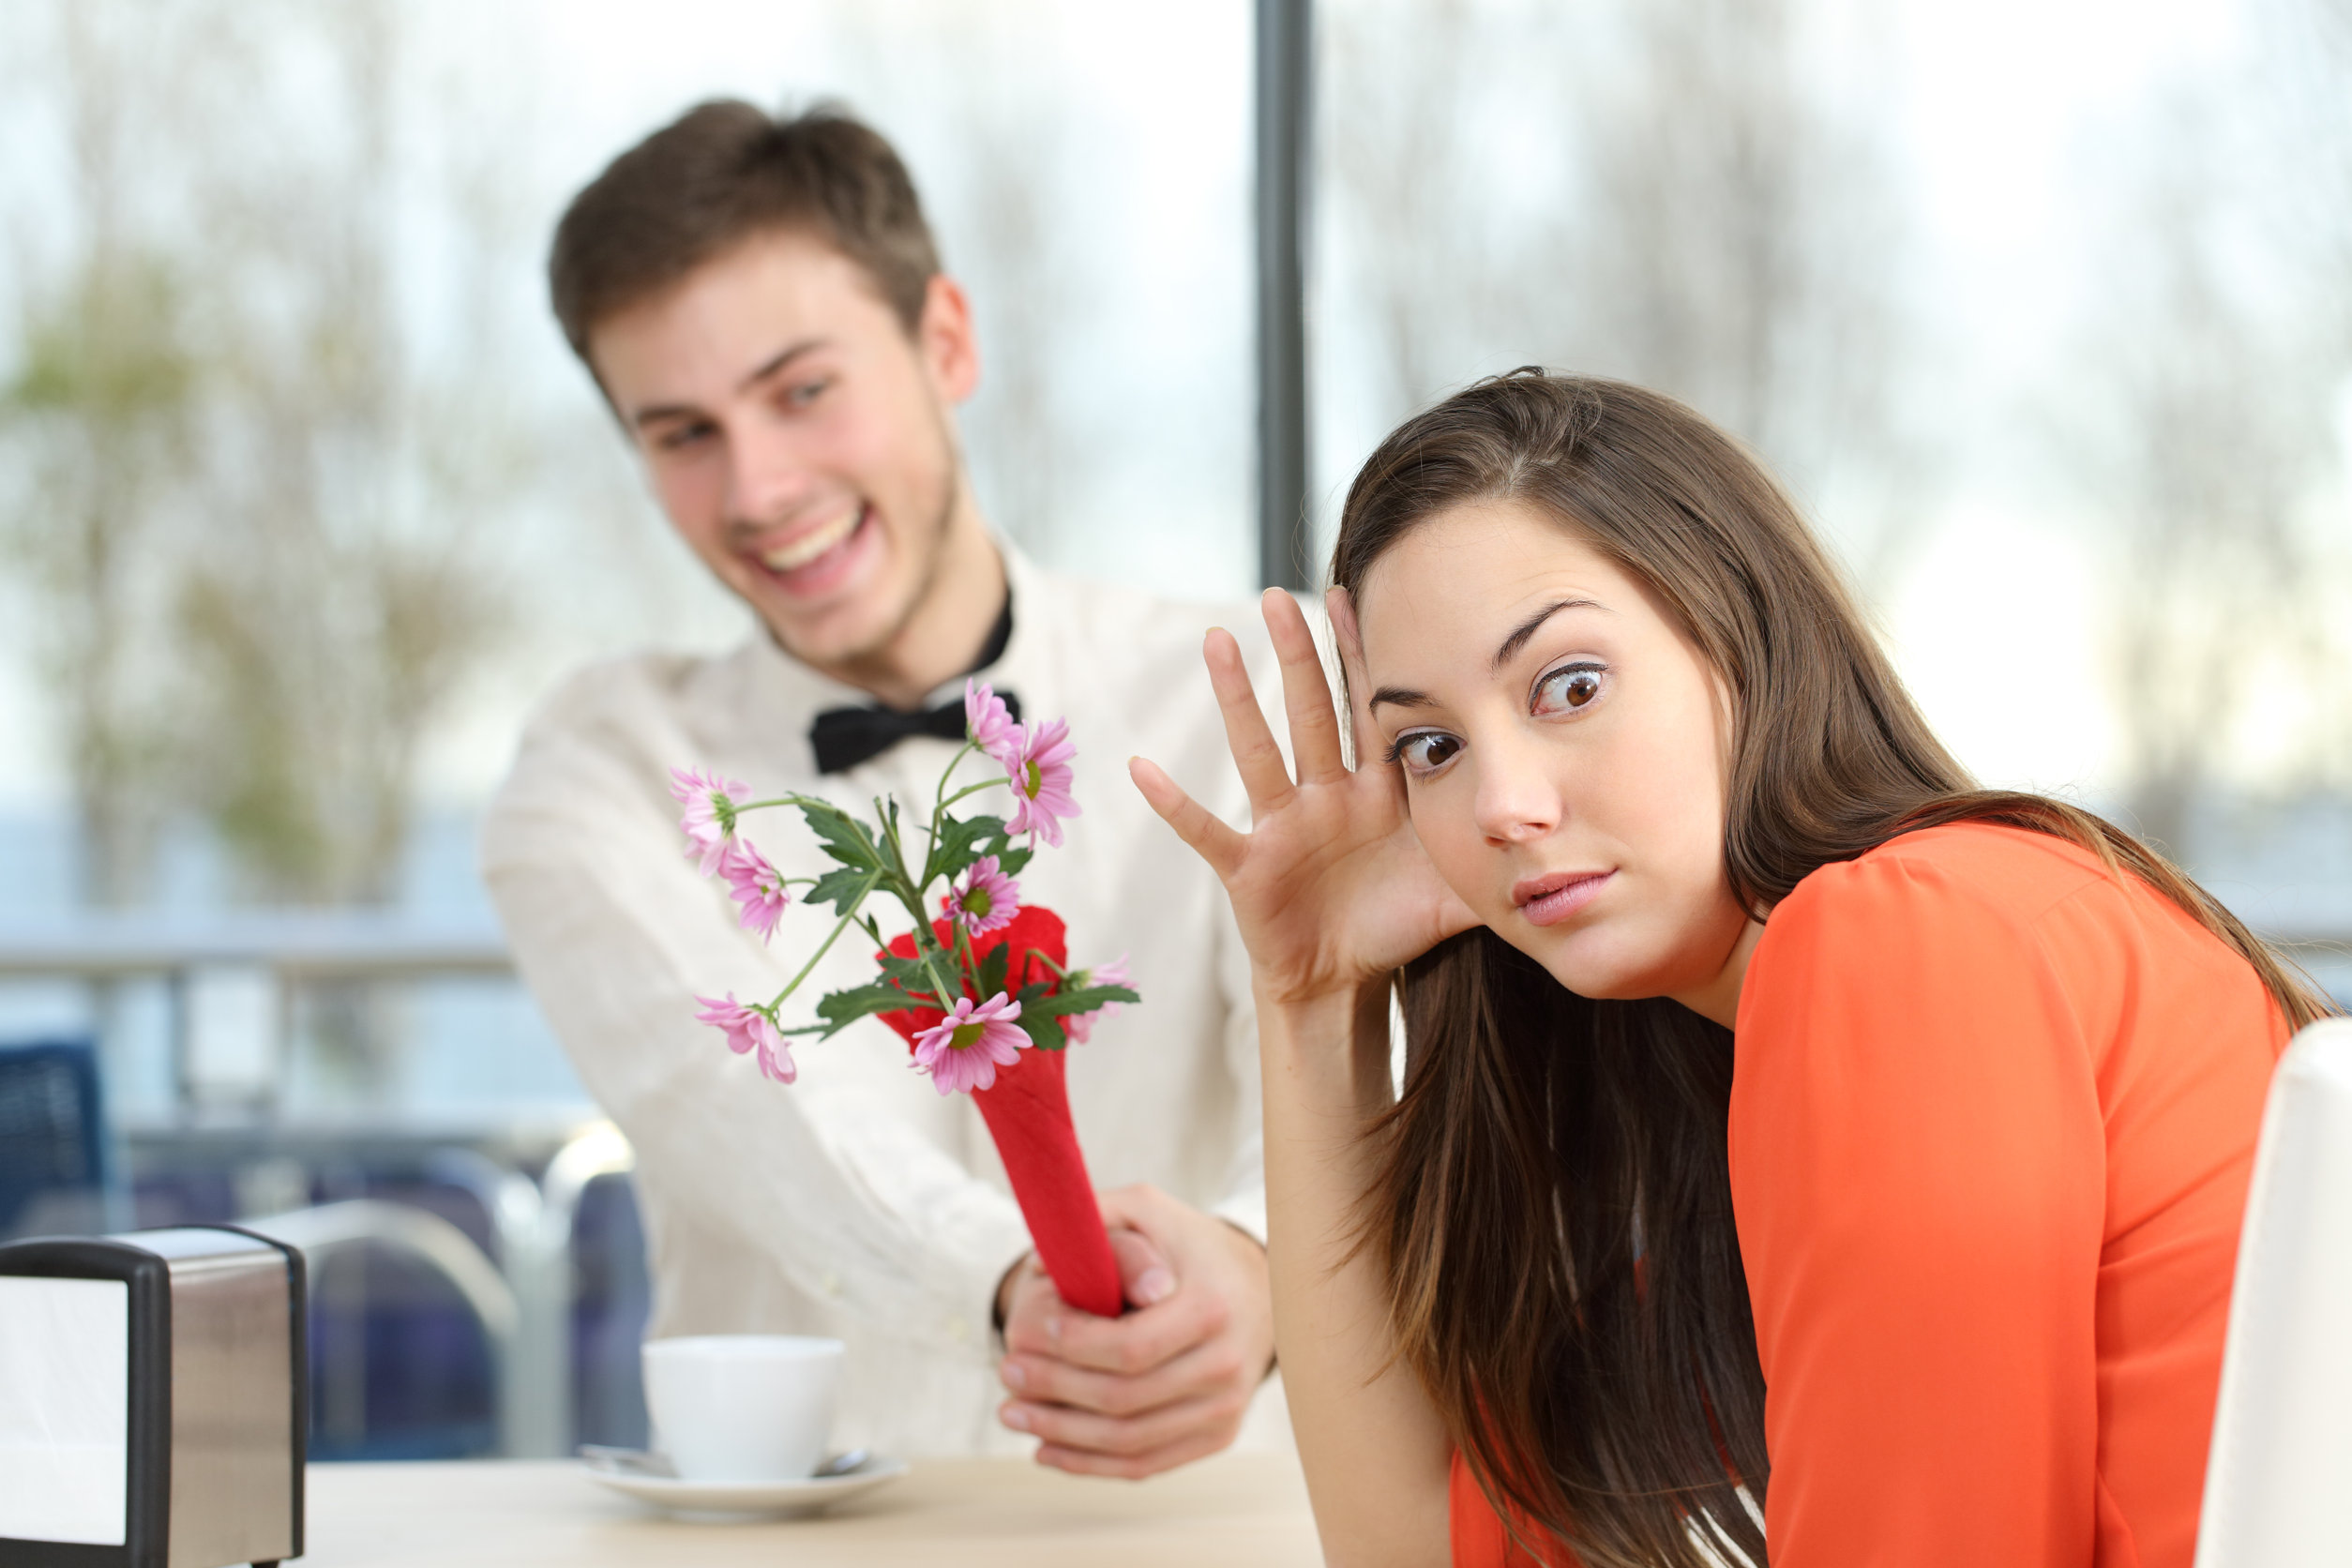 Poll: Wat vind jij grote afknappers op een eerste date? 21